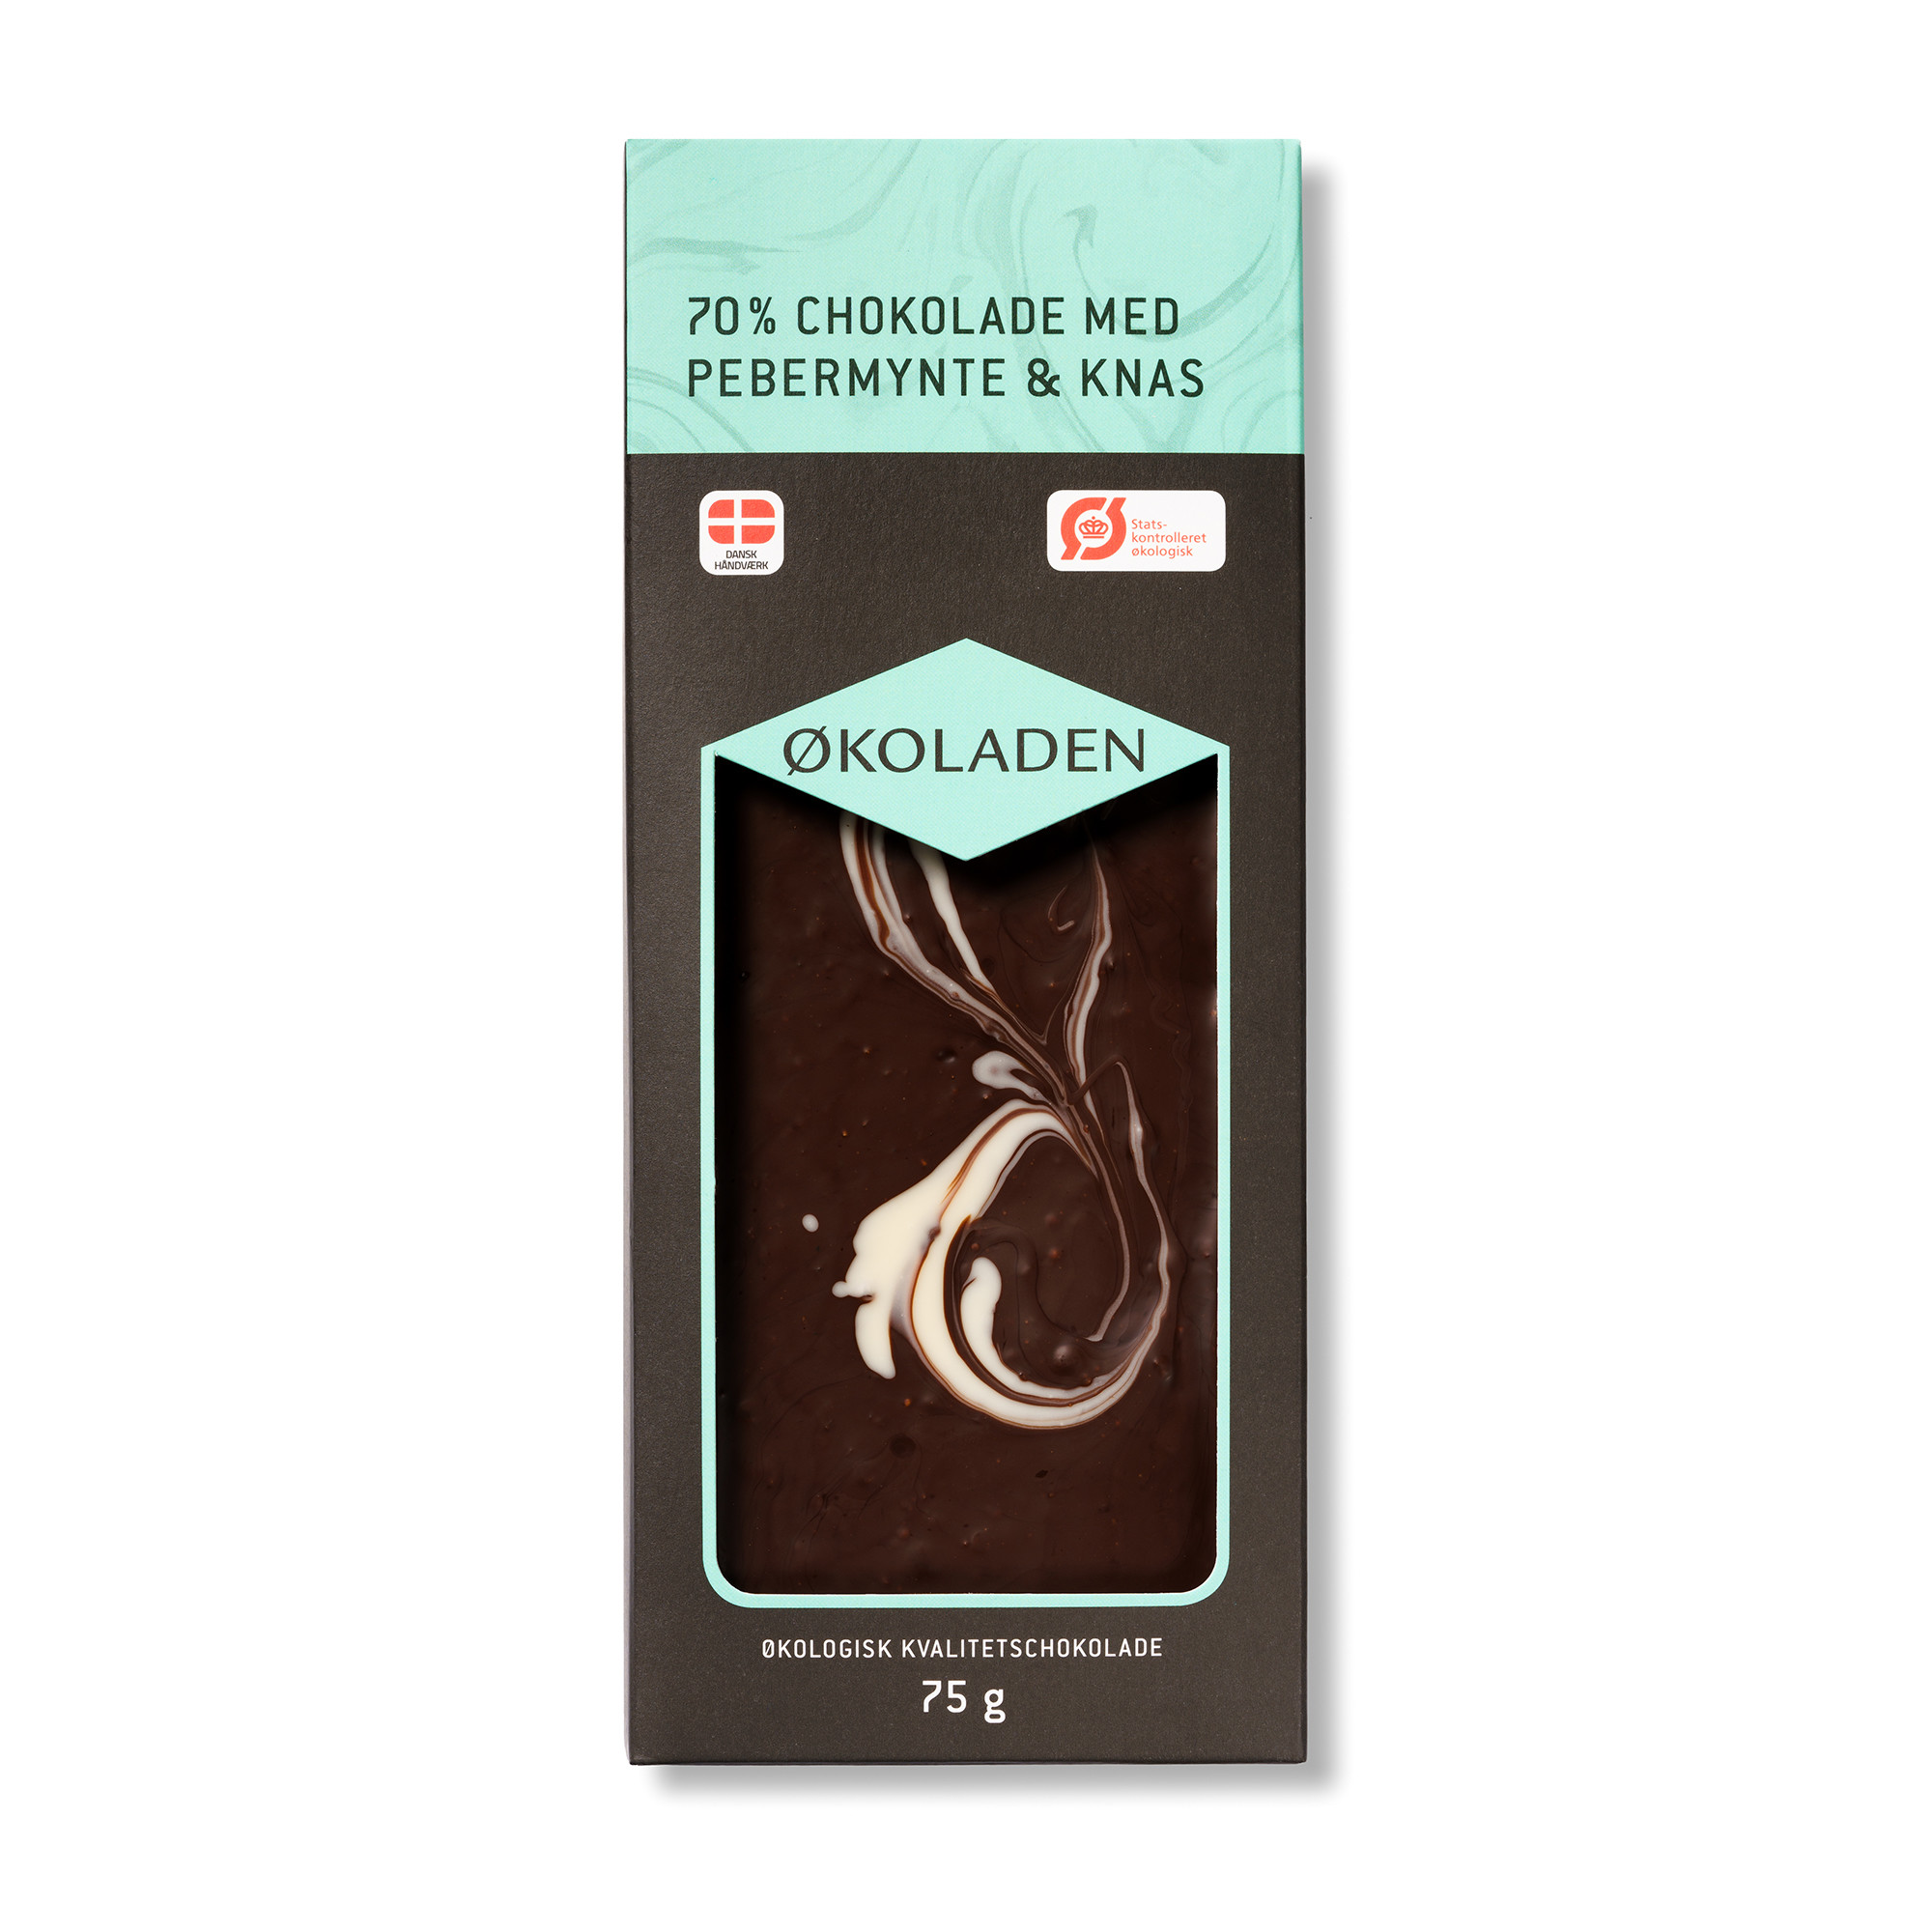 Økoladen Chokolade Pebermynte/knas Ø 70%